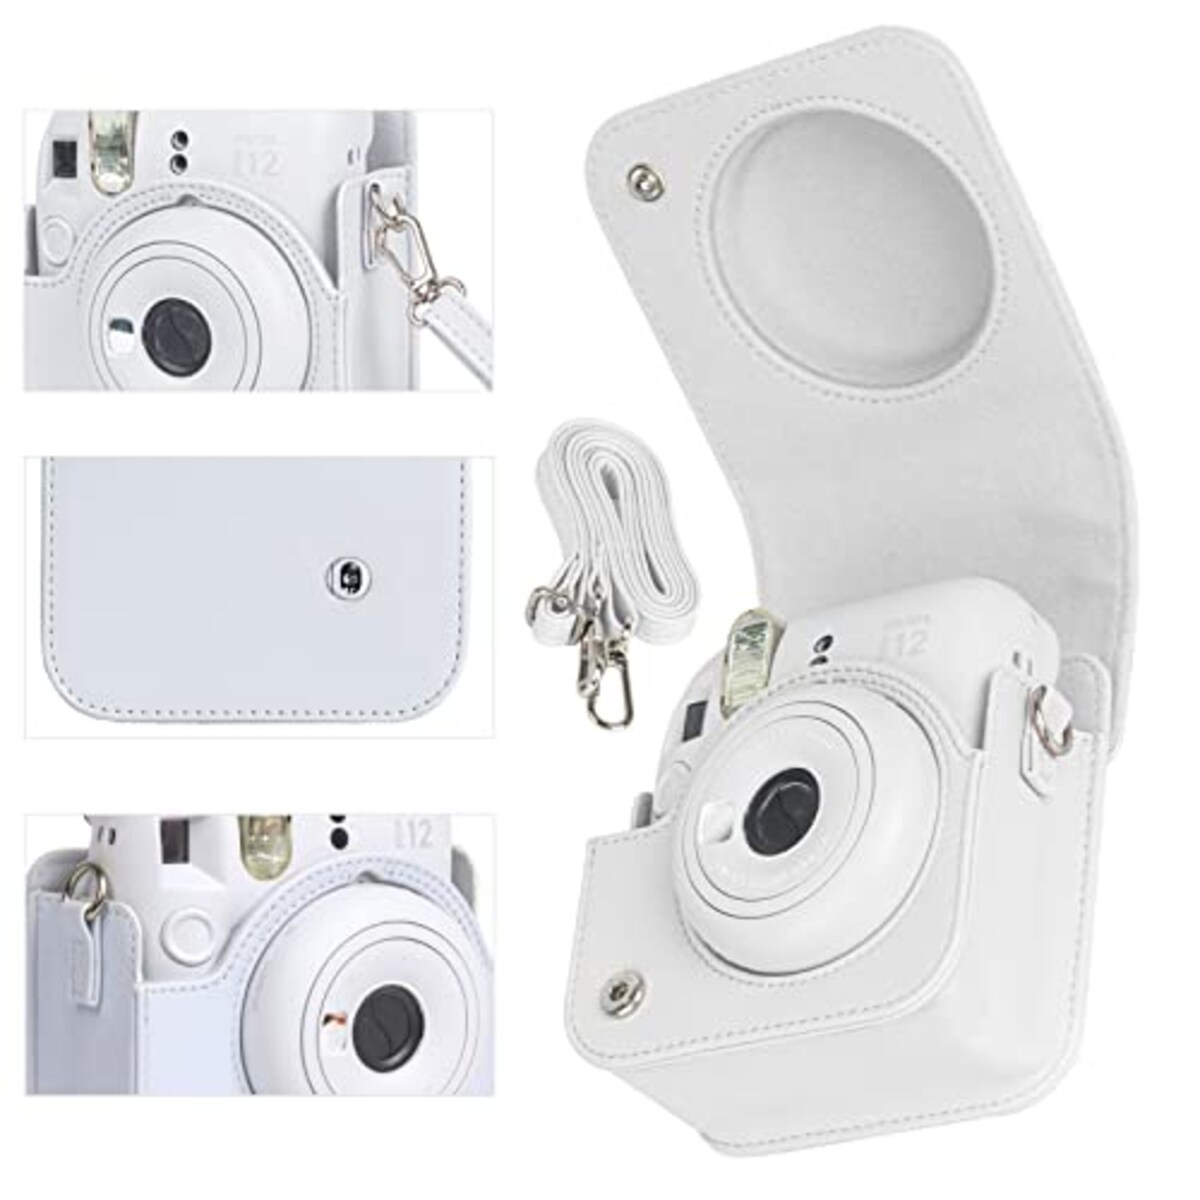  チェキケース instax mini 12用 カメラケース mini12 チェキ カバー Fujifilm チェキ ケース 新モデル 全面保護 傷つけ防止 携帯便利 ショルダーストラップ付き PUレザー (ホワイト)画像2 